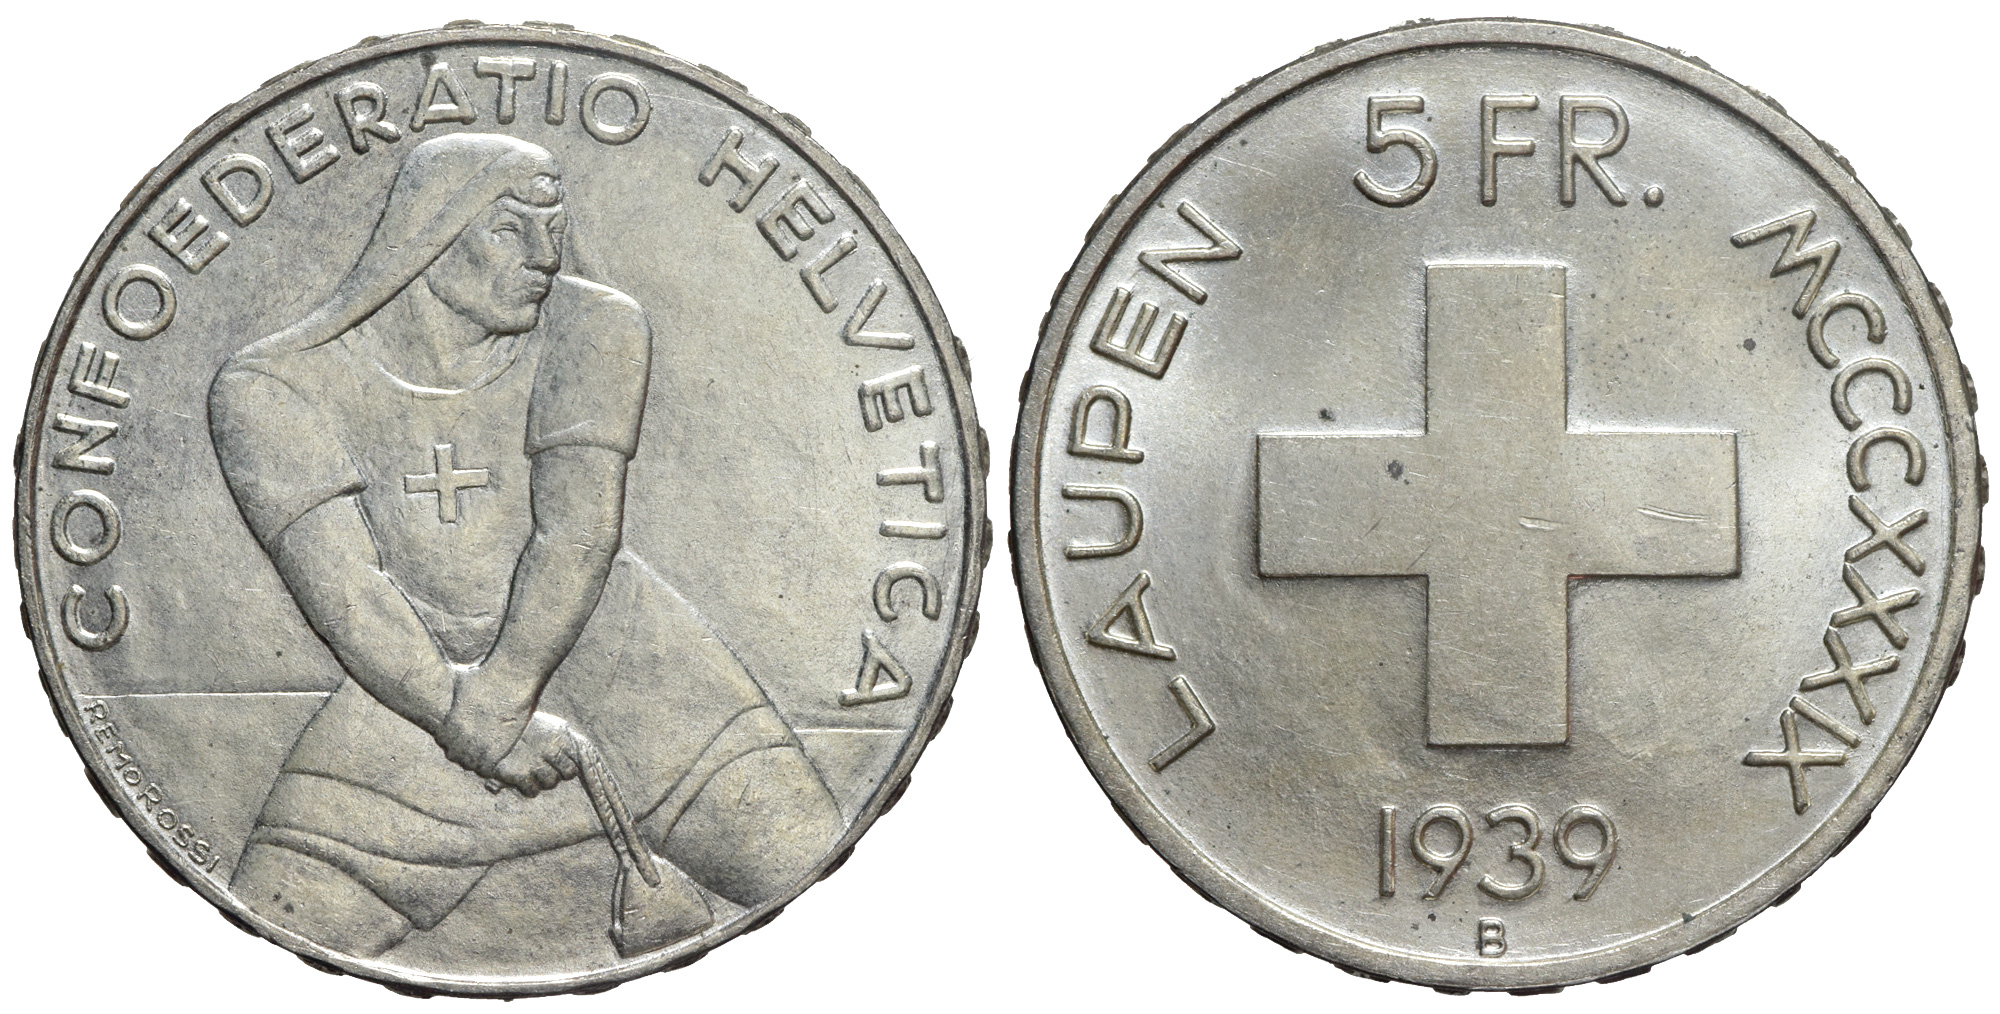 Switzerland Commemorative Coinage Francs 1939 